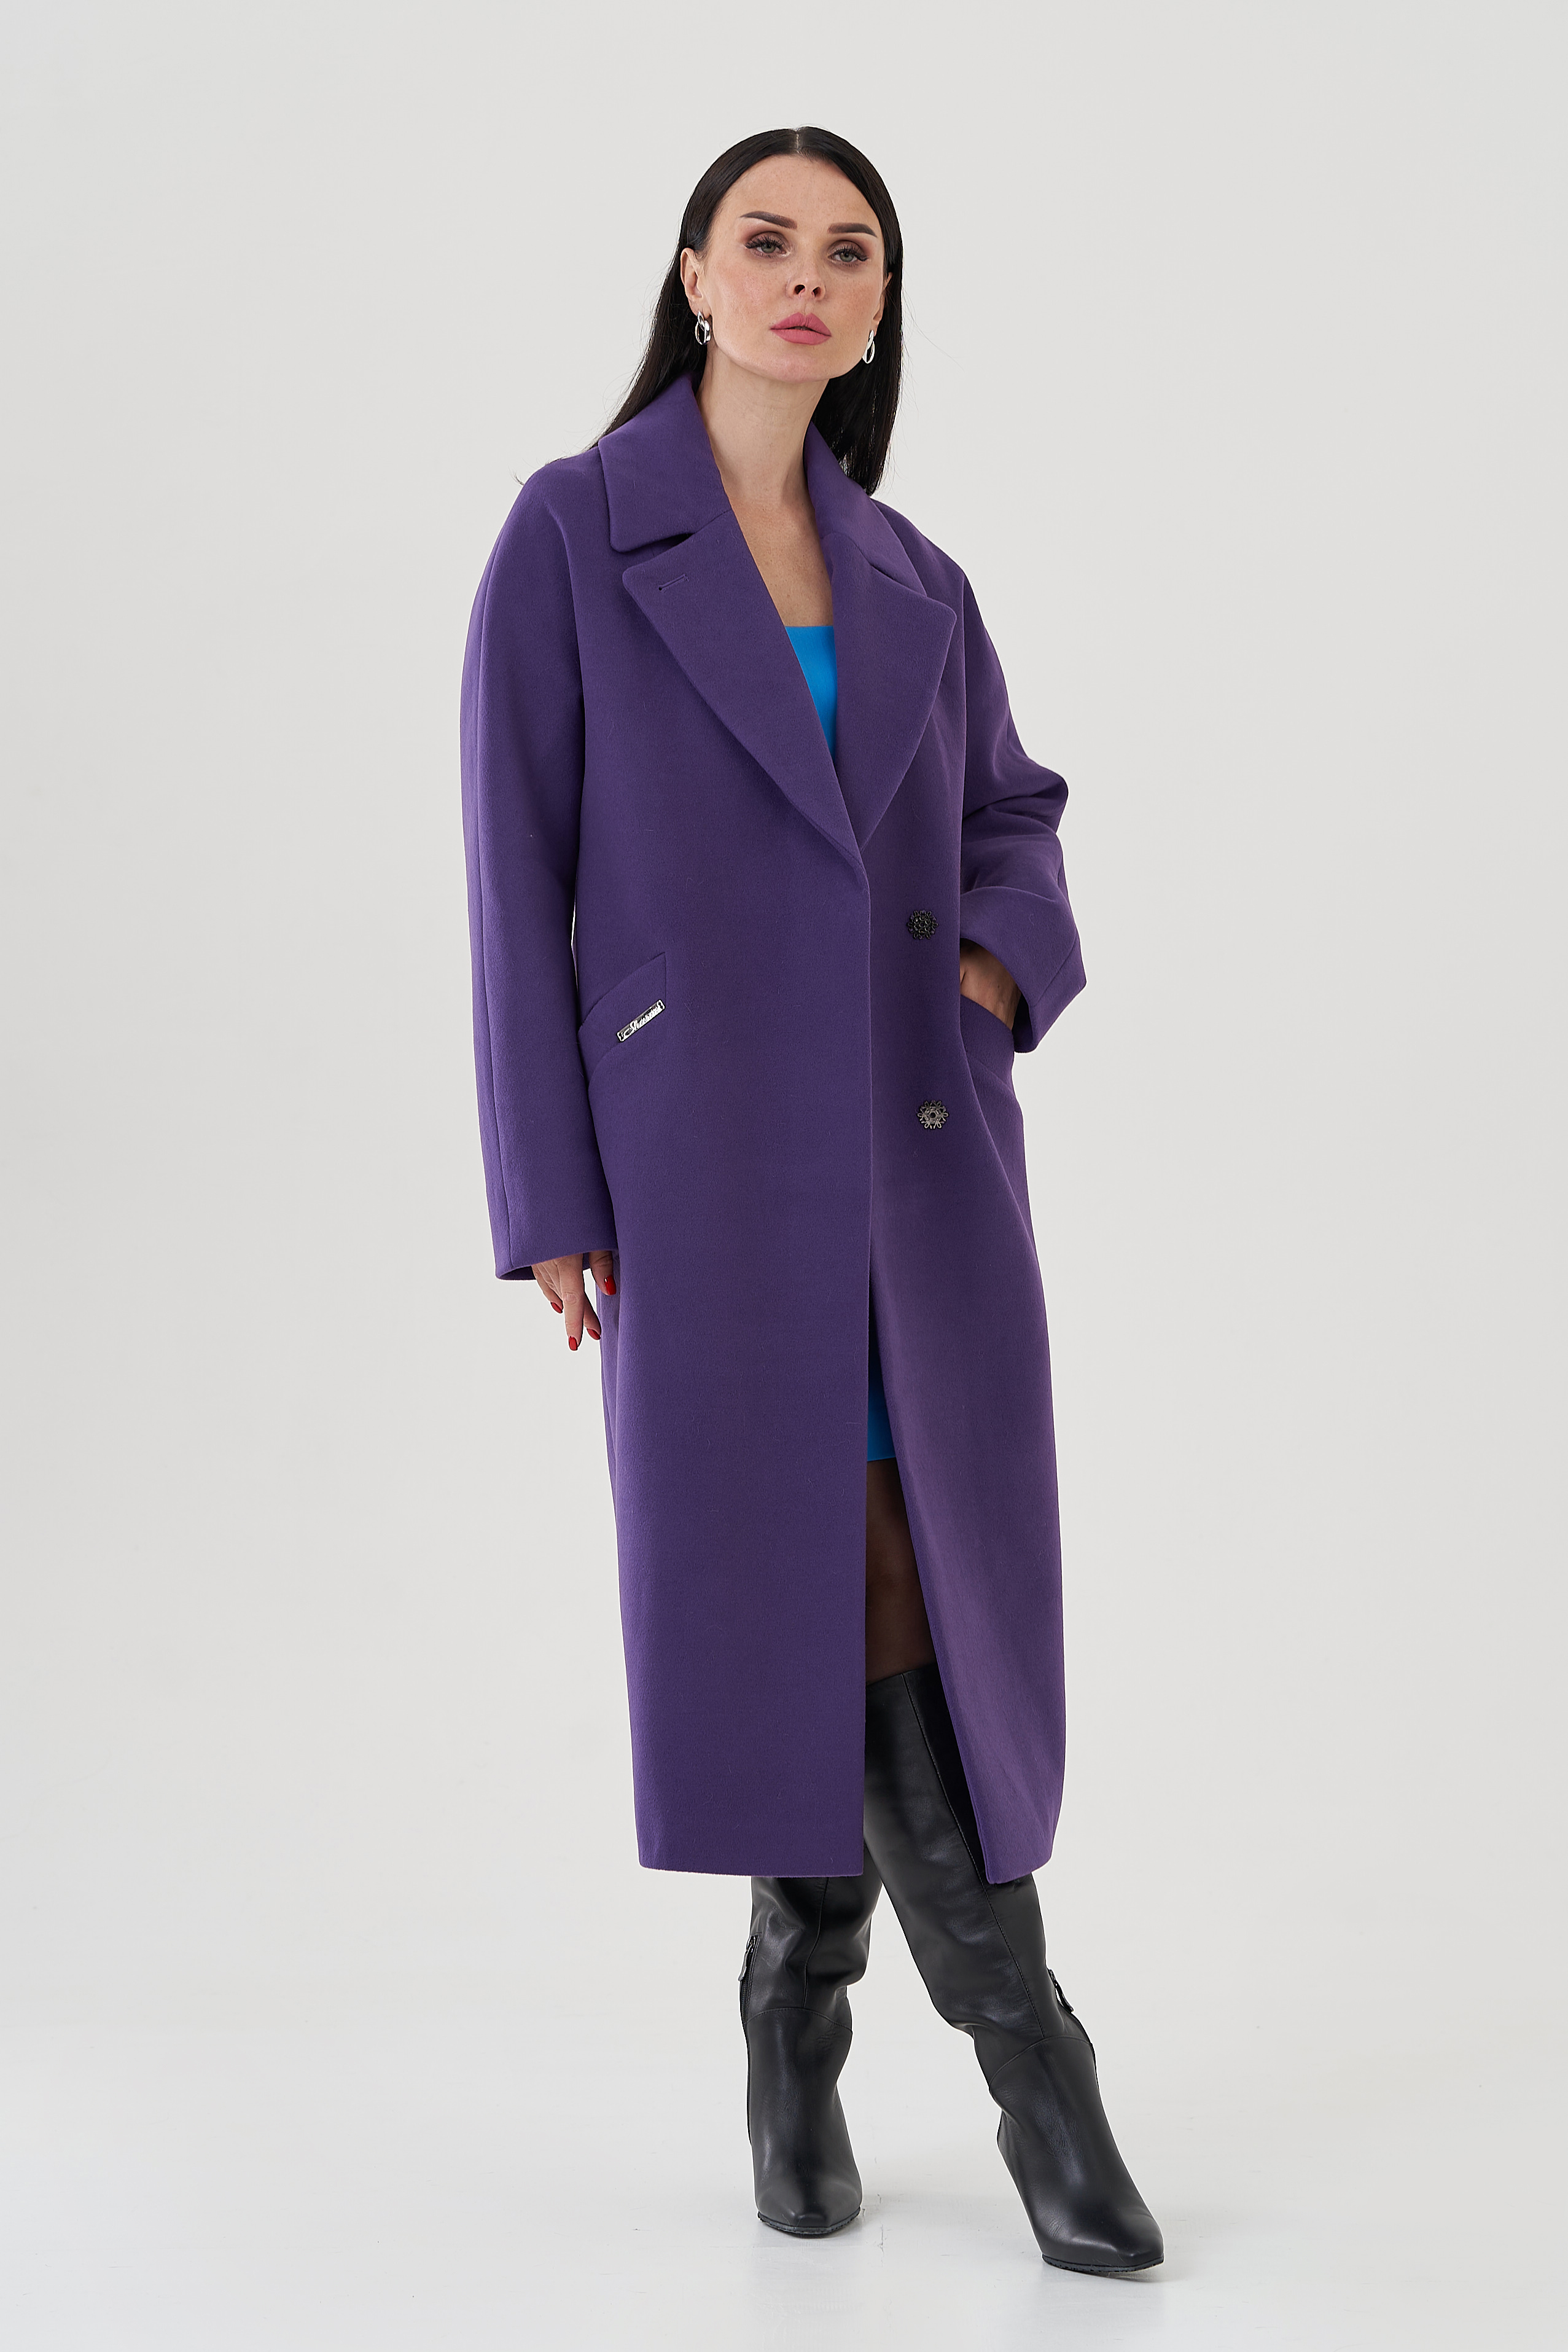 Пальто фиолетового цвета с английским воротником 24712 (фиолетовый) купить в интернет-магазине с доставкой